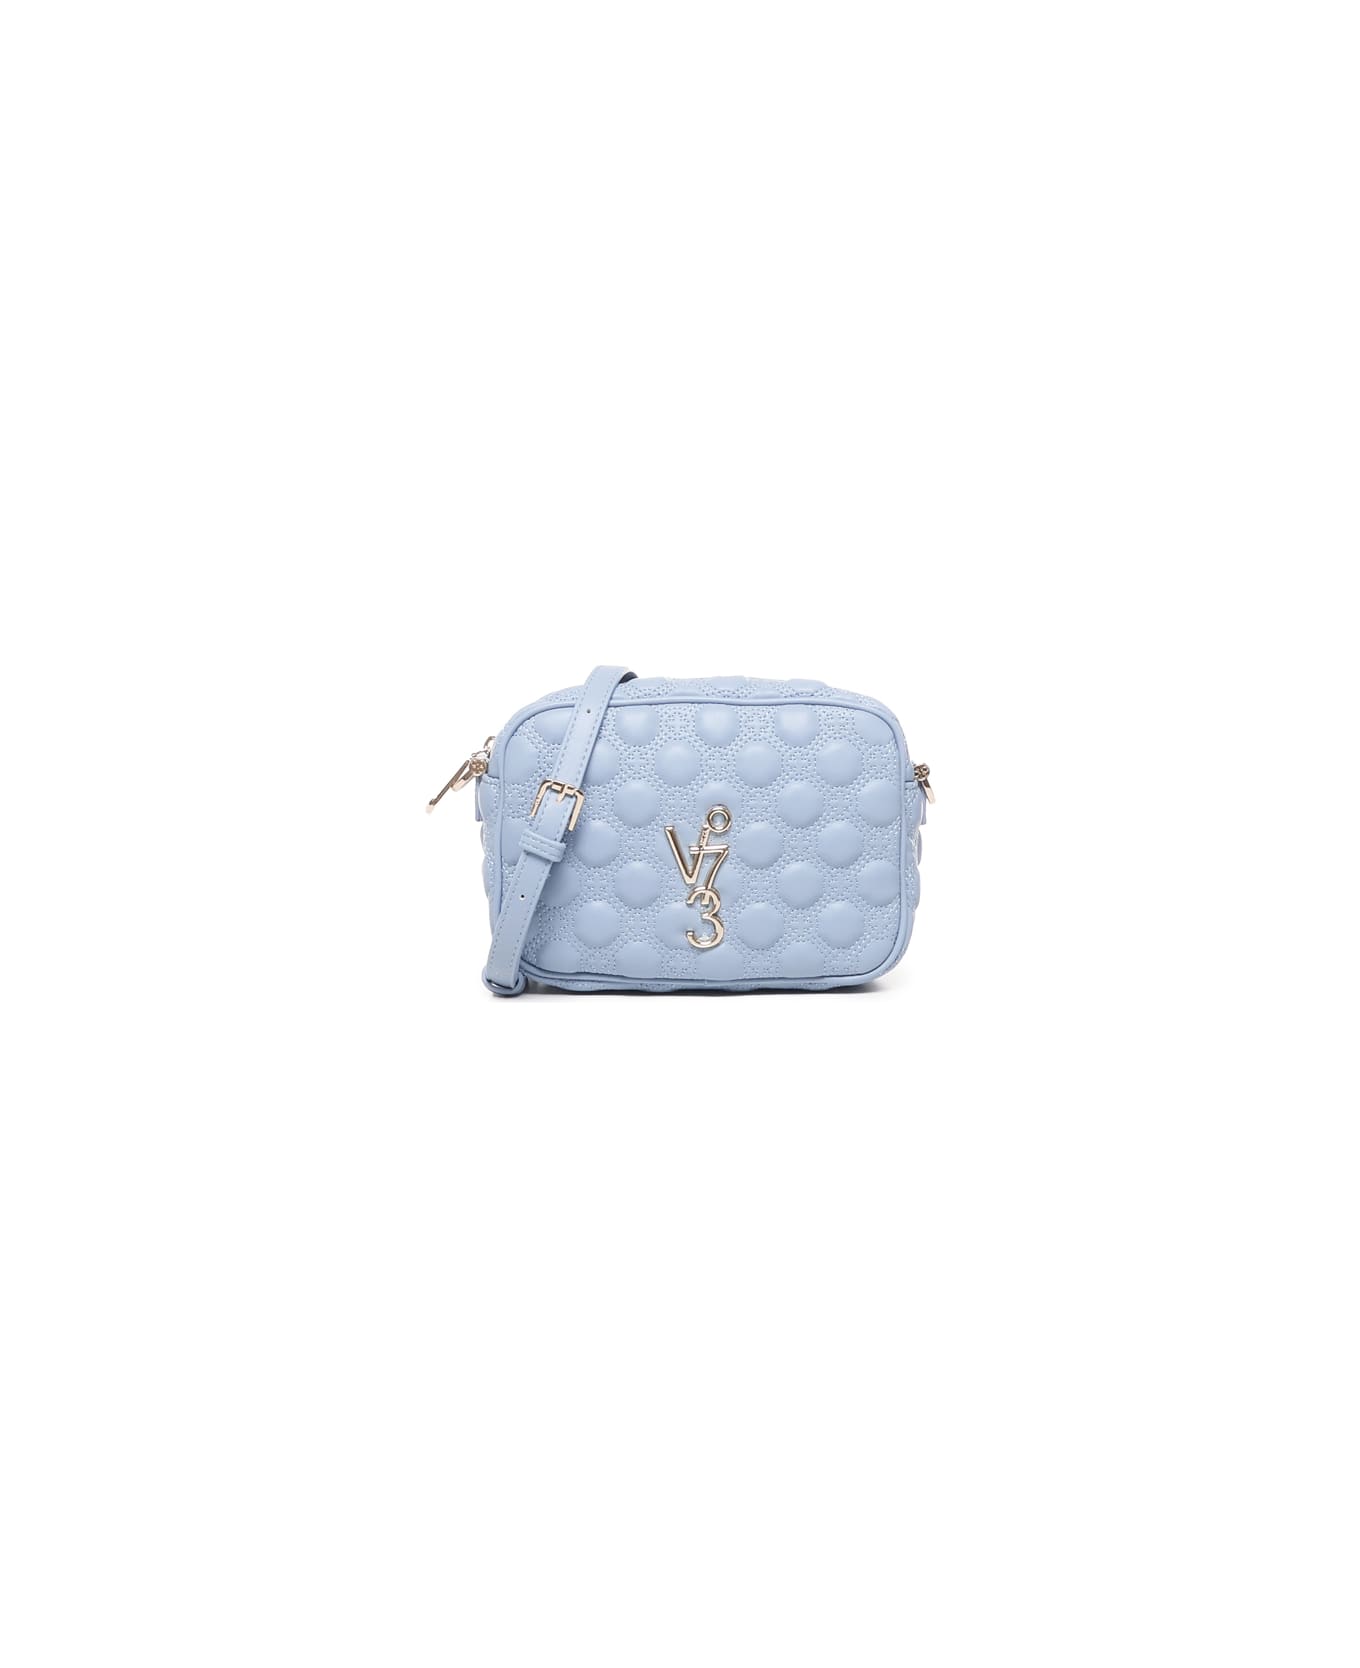 V73 Eva Shoulder Bag - Dusty blue